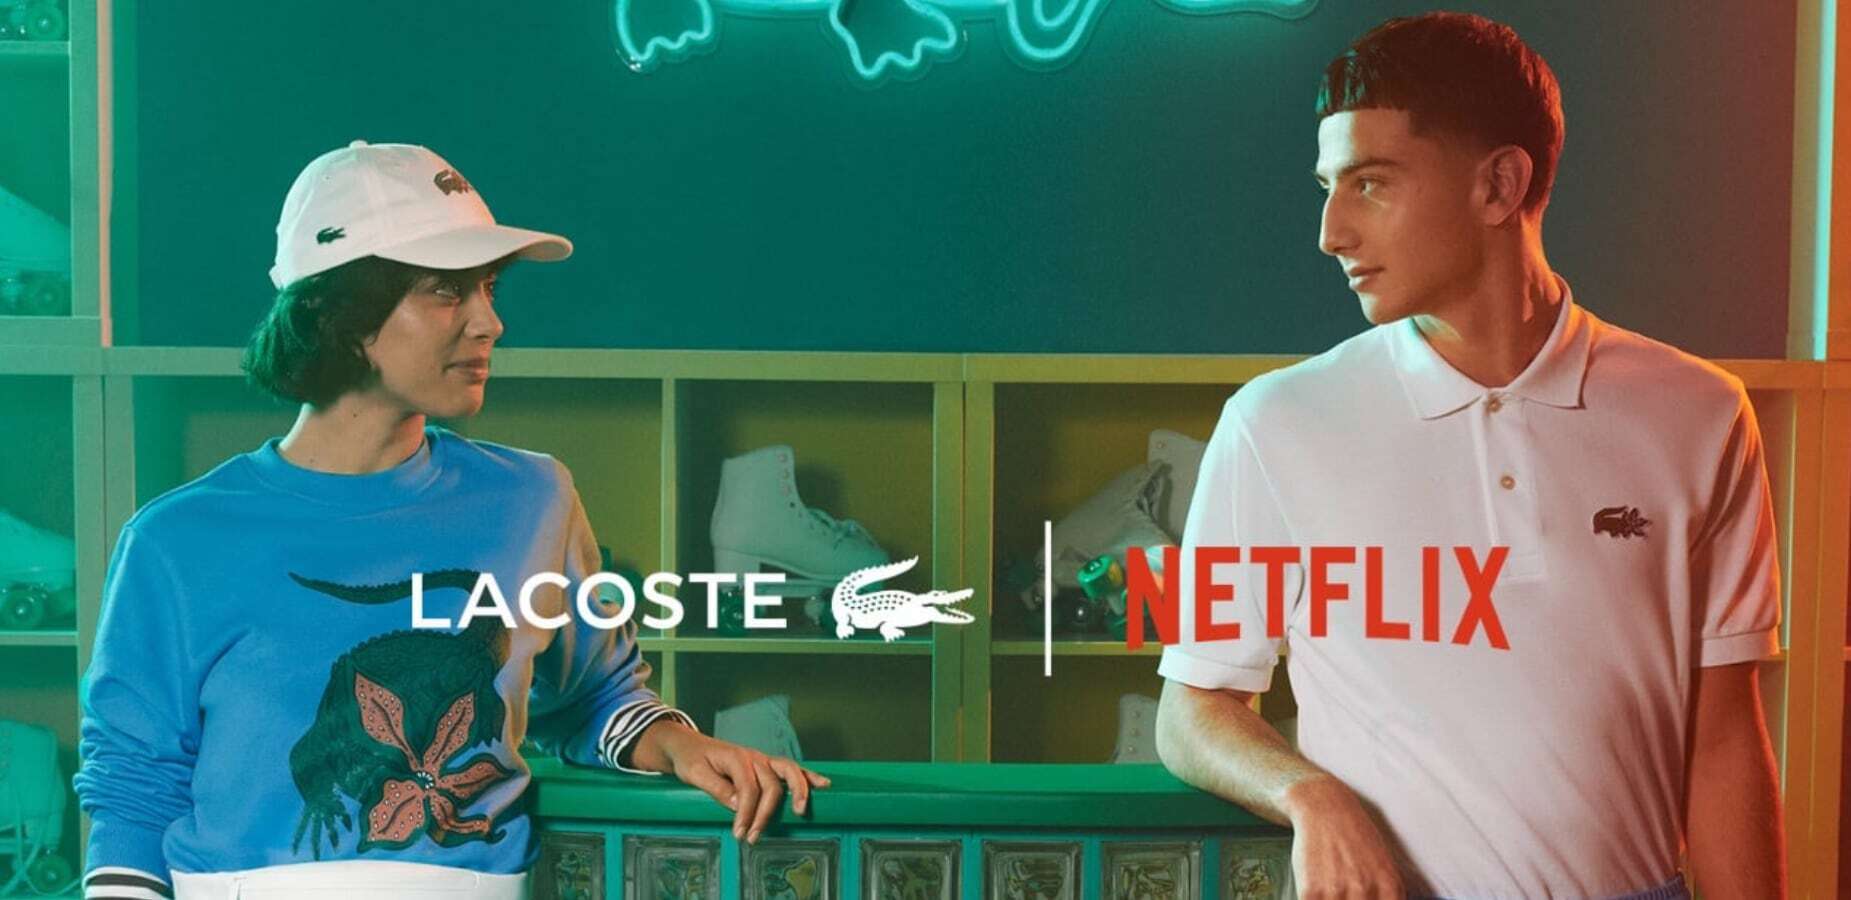 La collab’ mode Netflix x Lacoste vous rhabille en protagoniste de séries